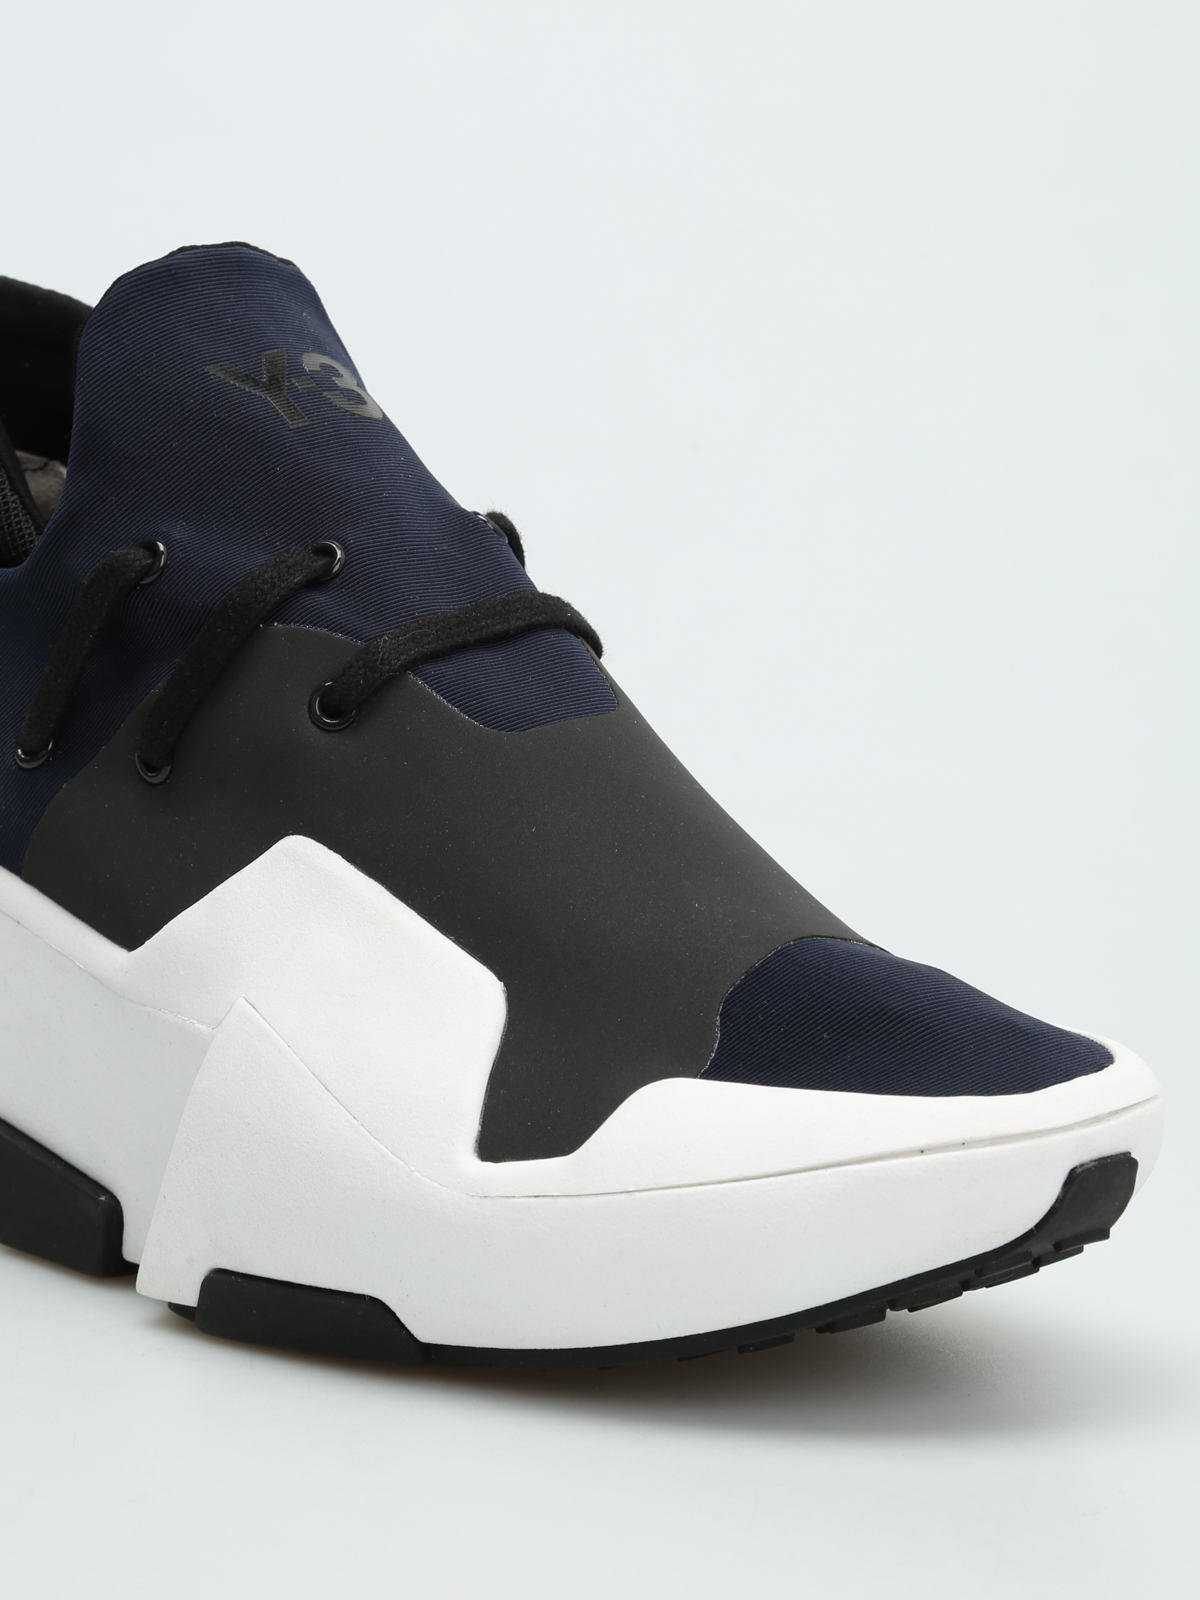 adidas futuristic shoes